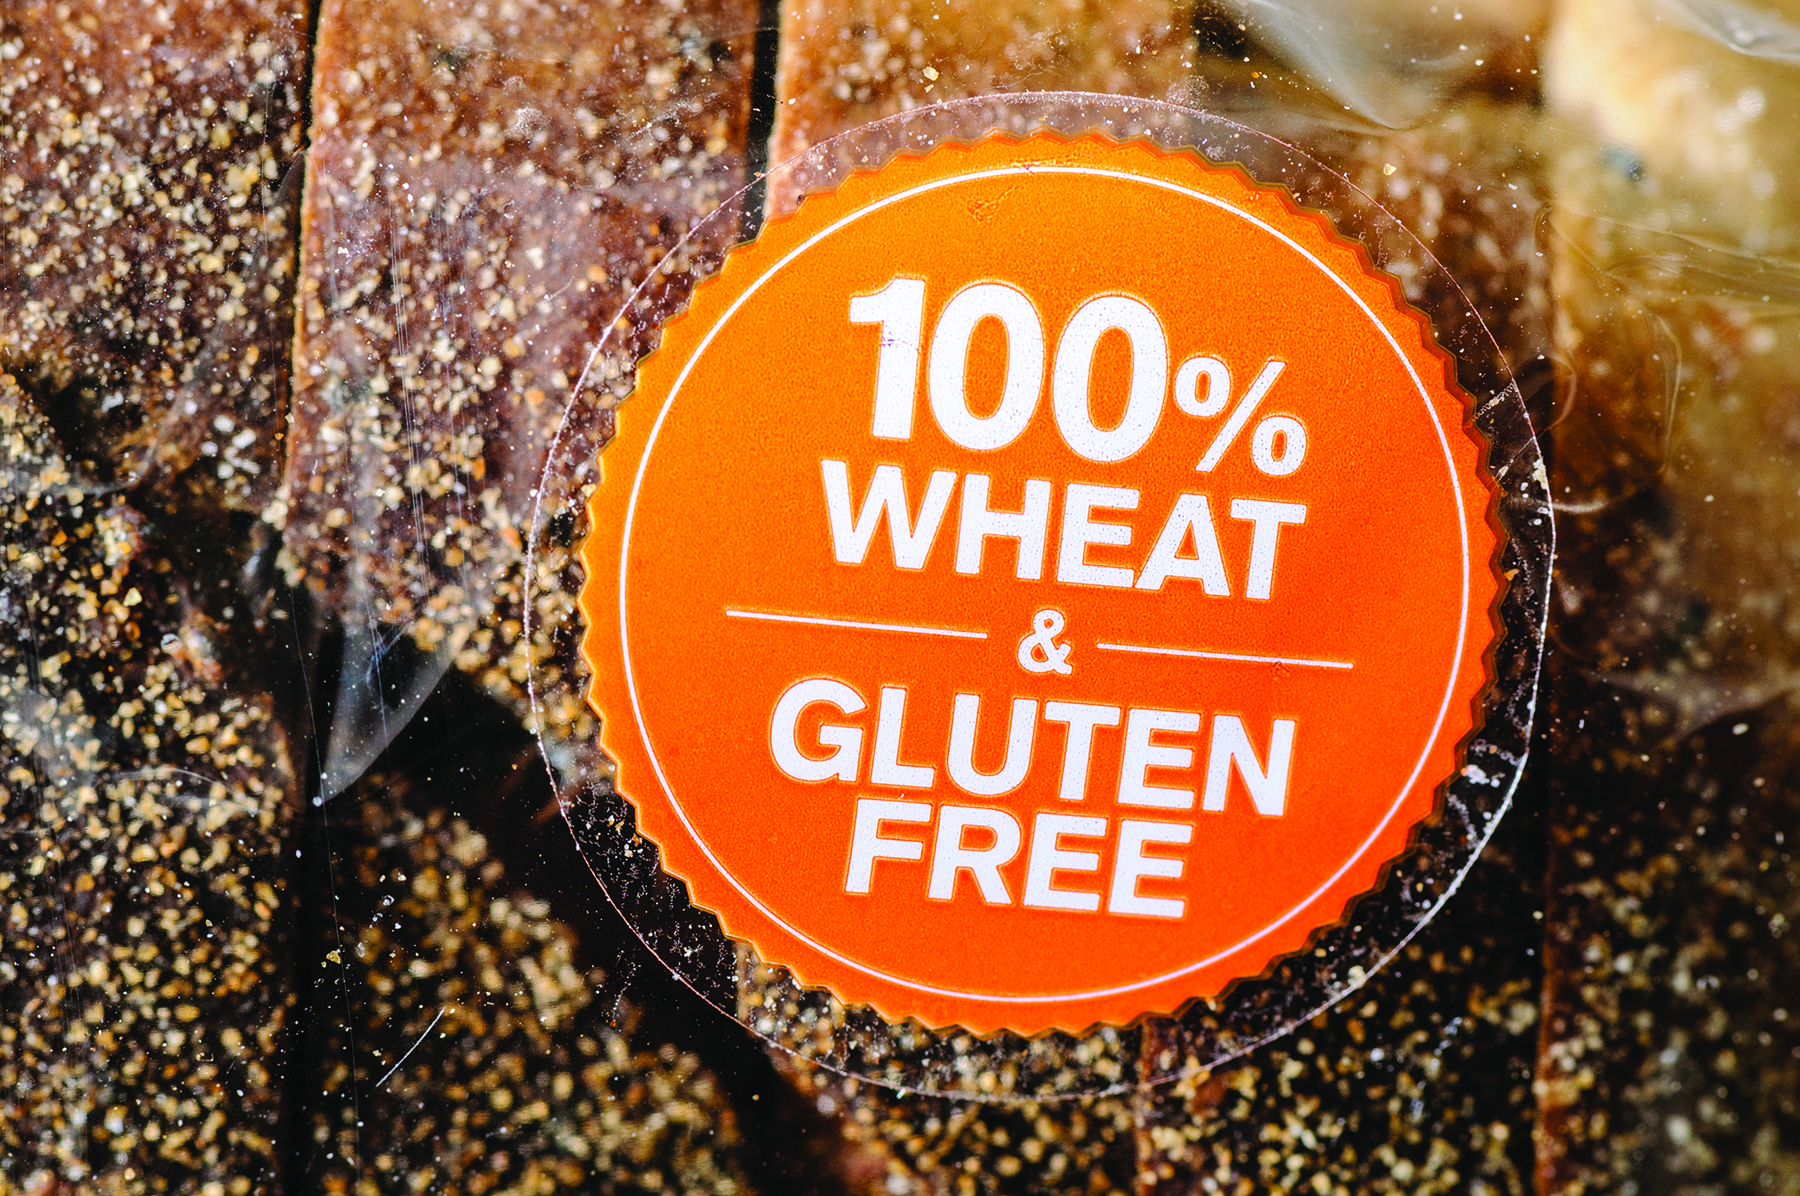 Gluten-free label